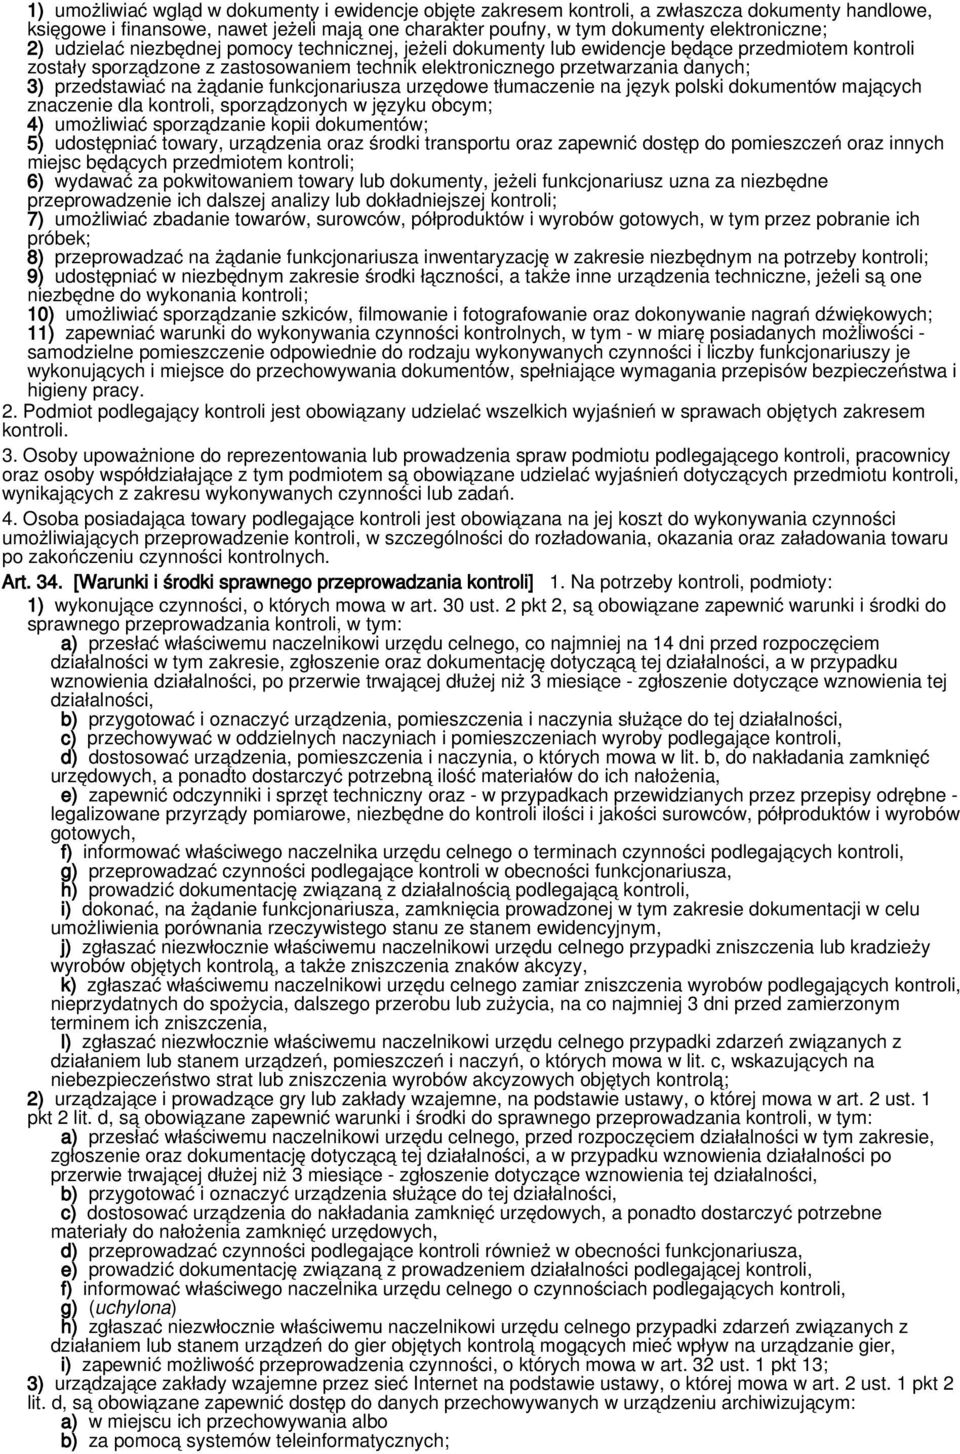 żądanie funkcjonariusza urzędowe tłumaczenie na język polski dokumentów mających znaczenie dla kontroli, sporządzonych w języku obcym; 4) umożliwiać sporządzanie kopii dokumentów; 5) udostępniać